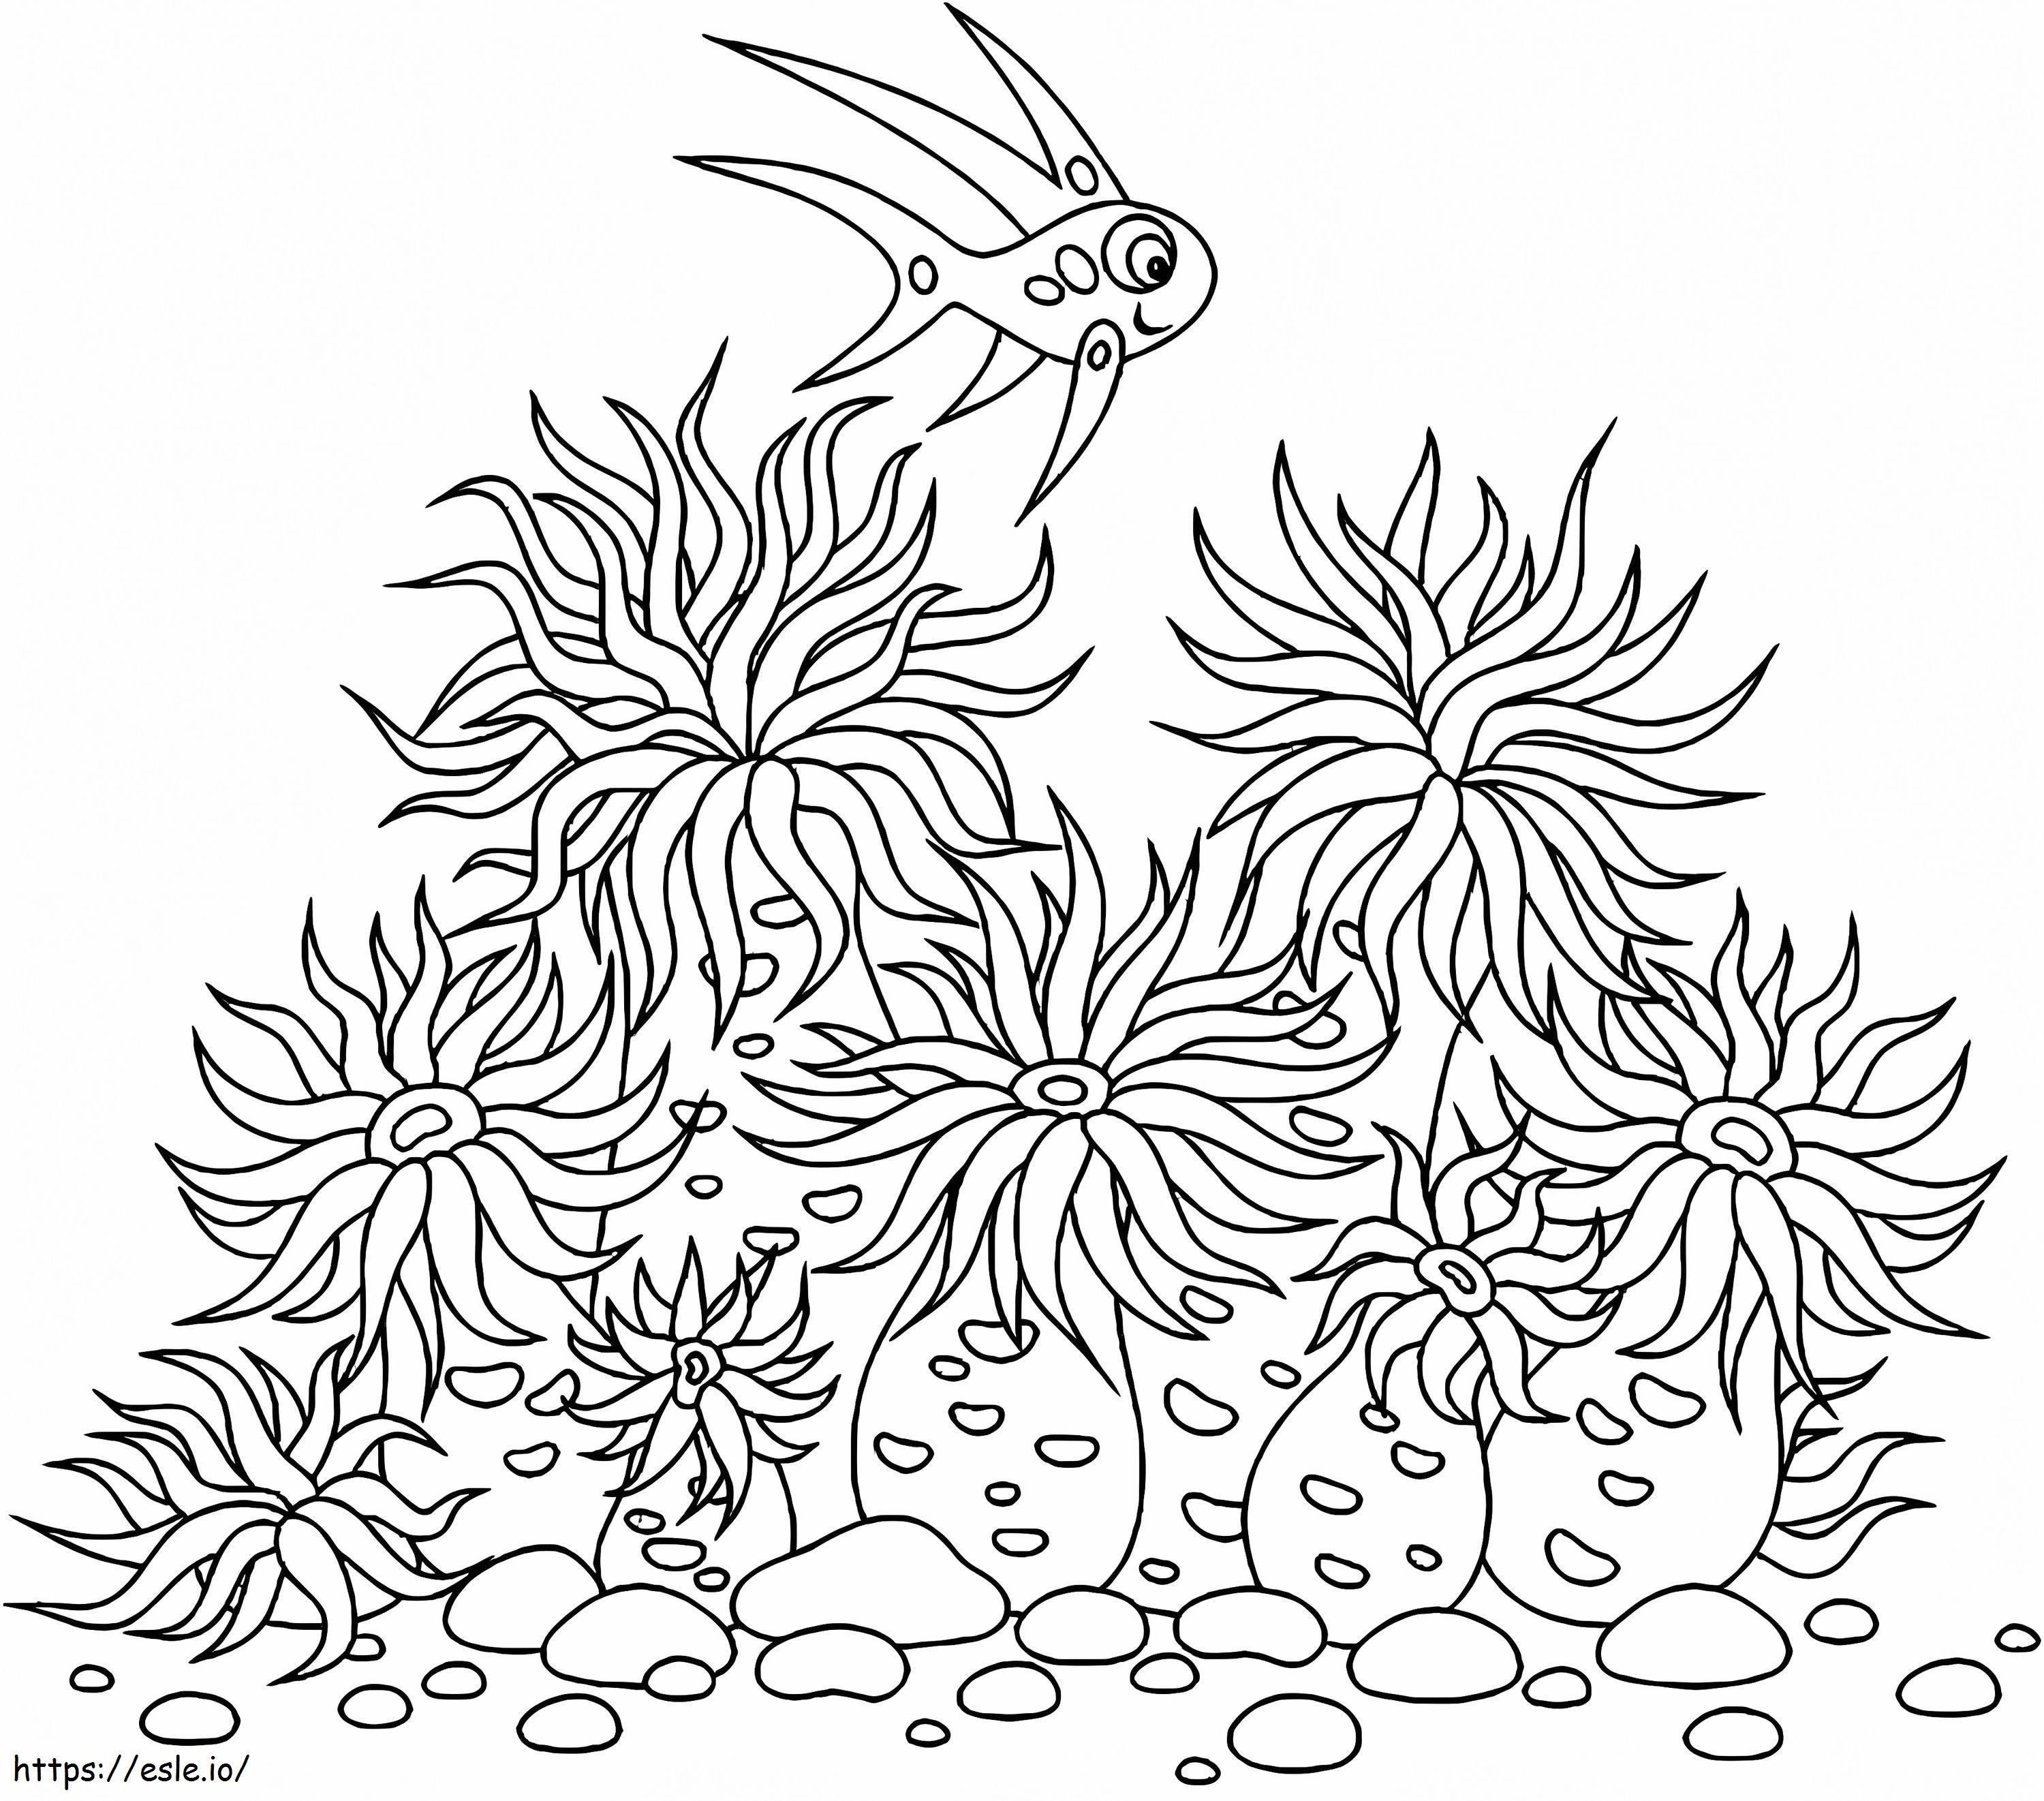 Sea Anemones coloring page